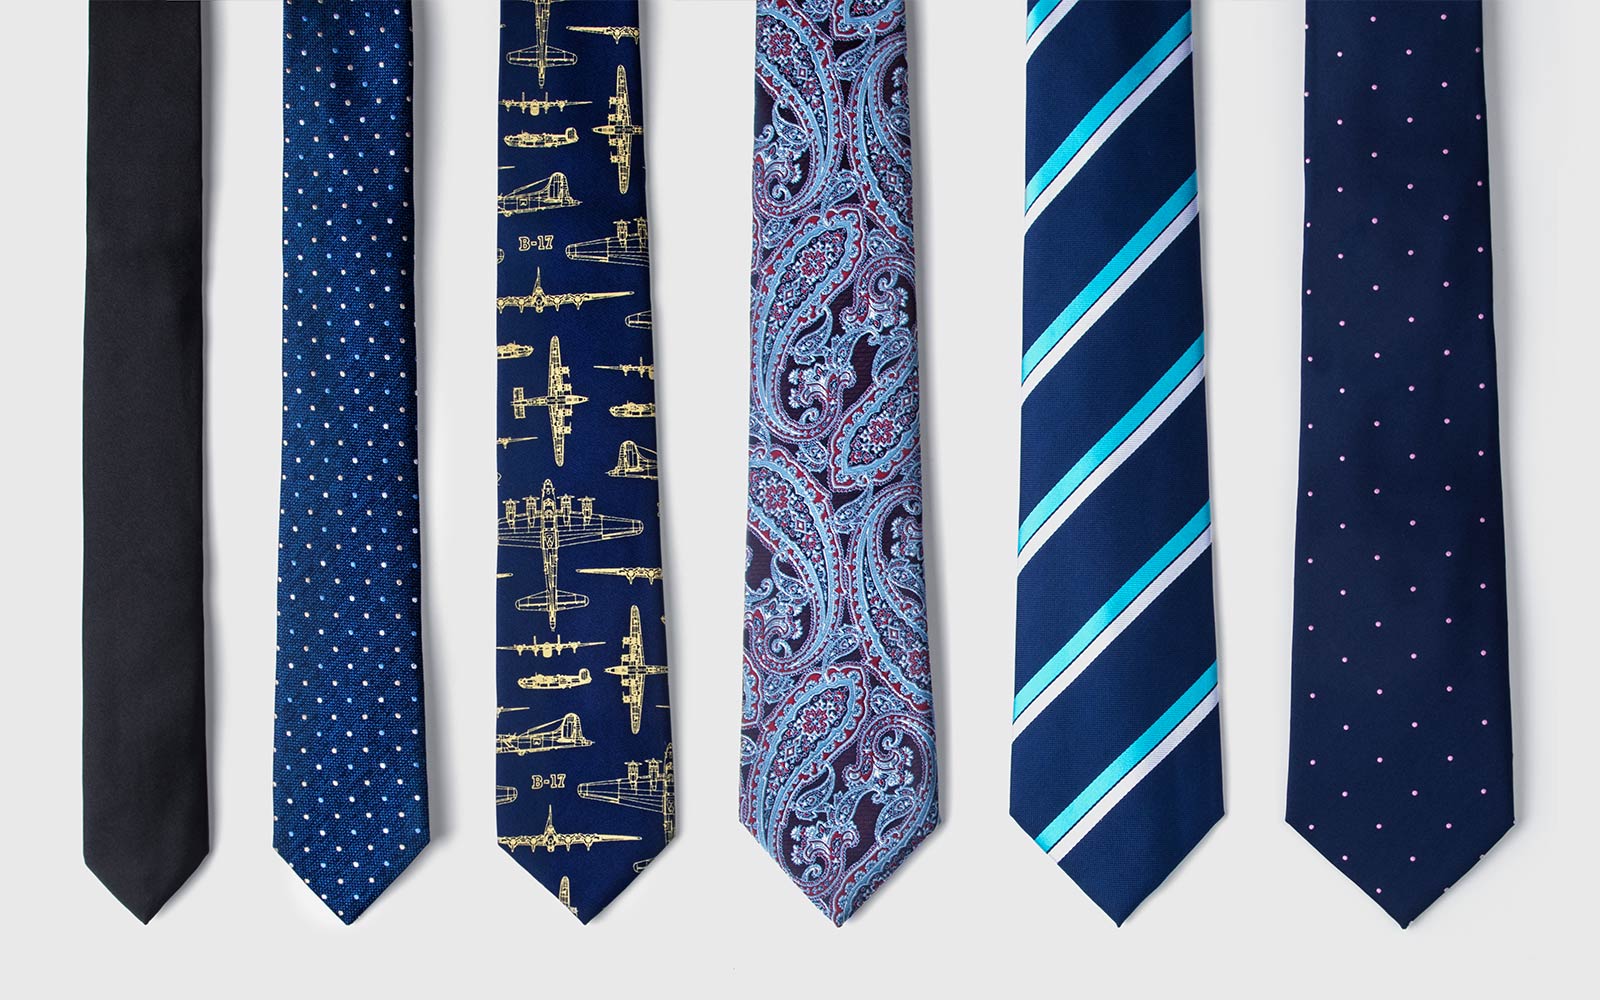 Collection of Ties.com neckties